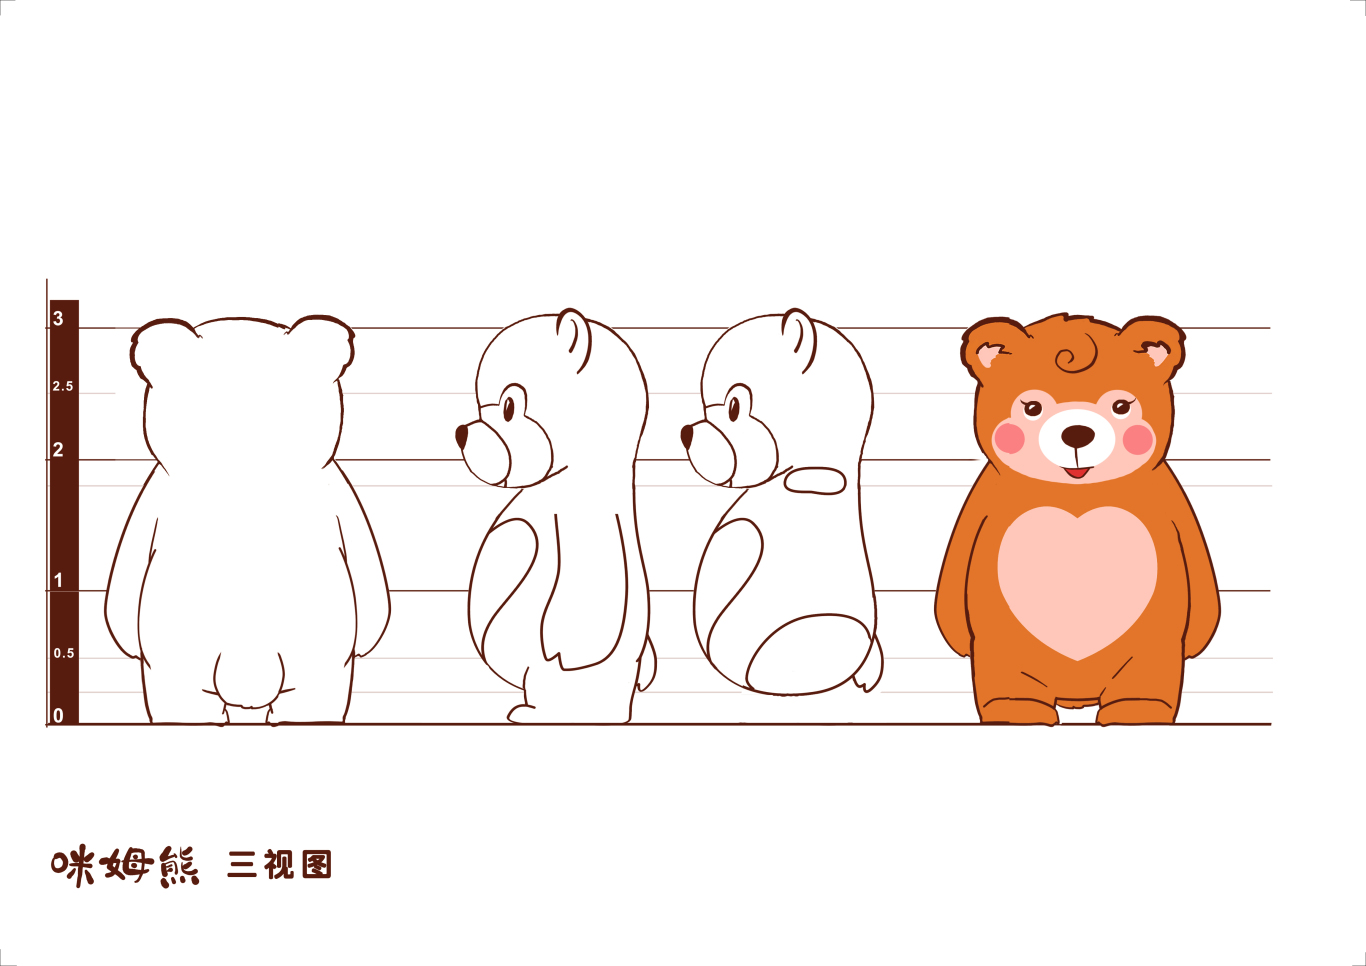 广州市妇幼卡通形象设计图1